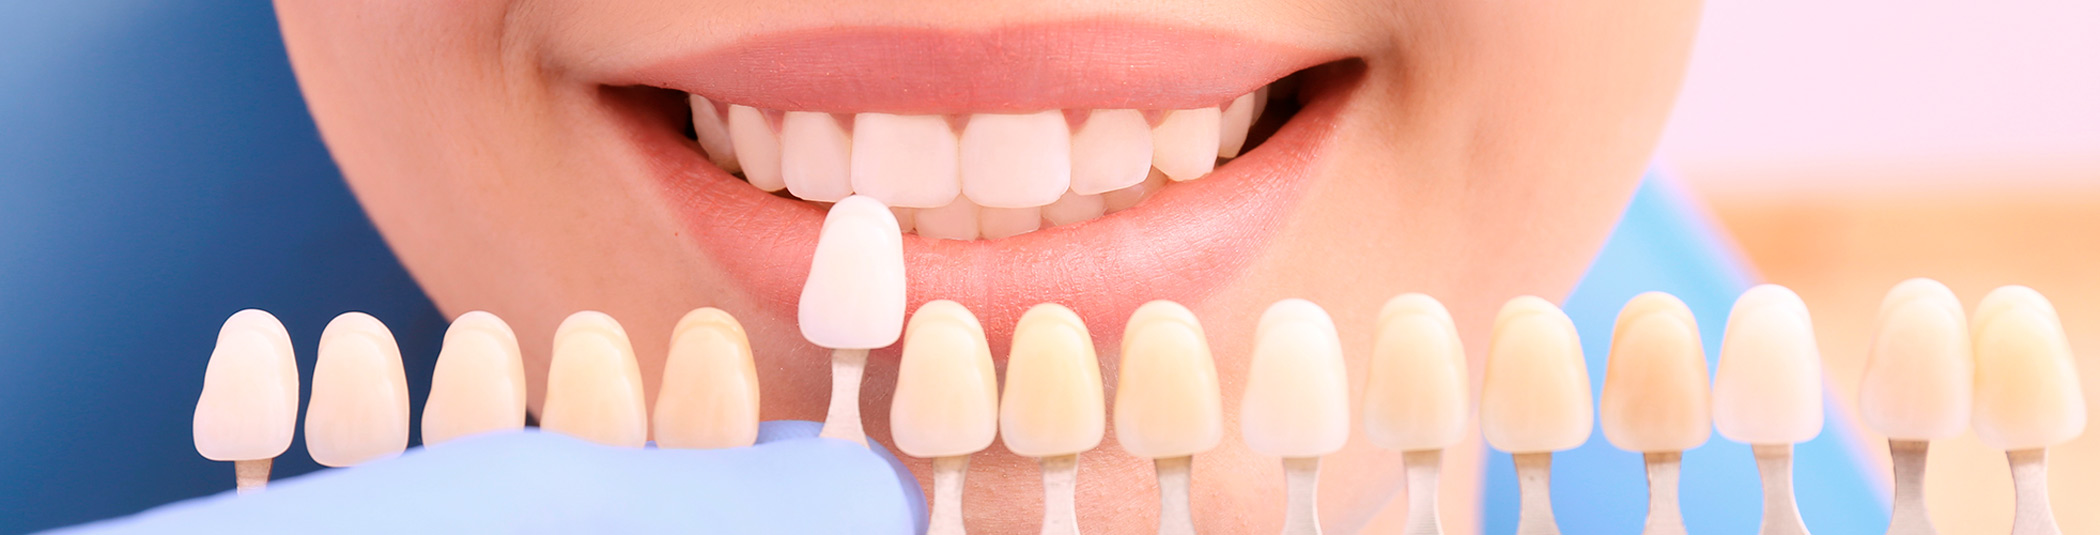 Selección de color para tratamiento de estética dental